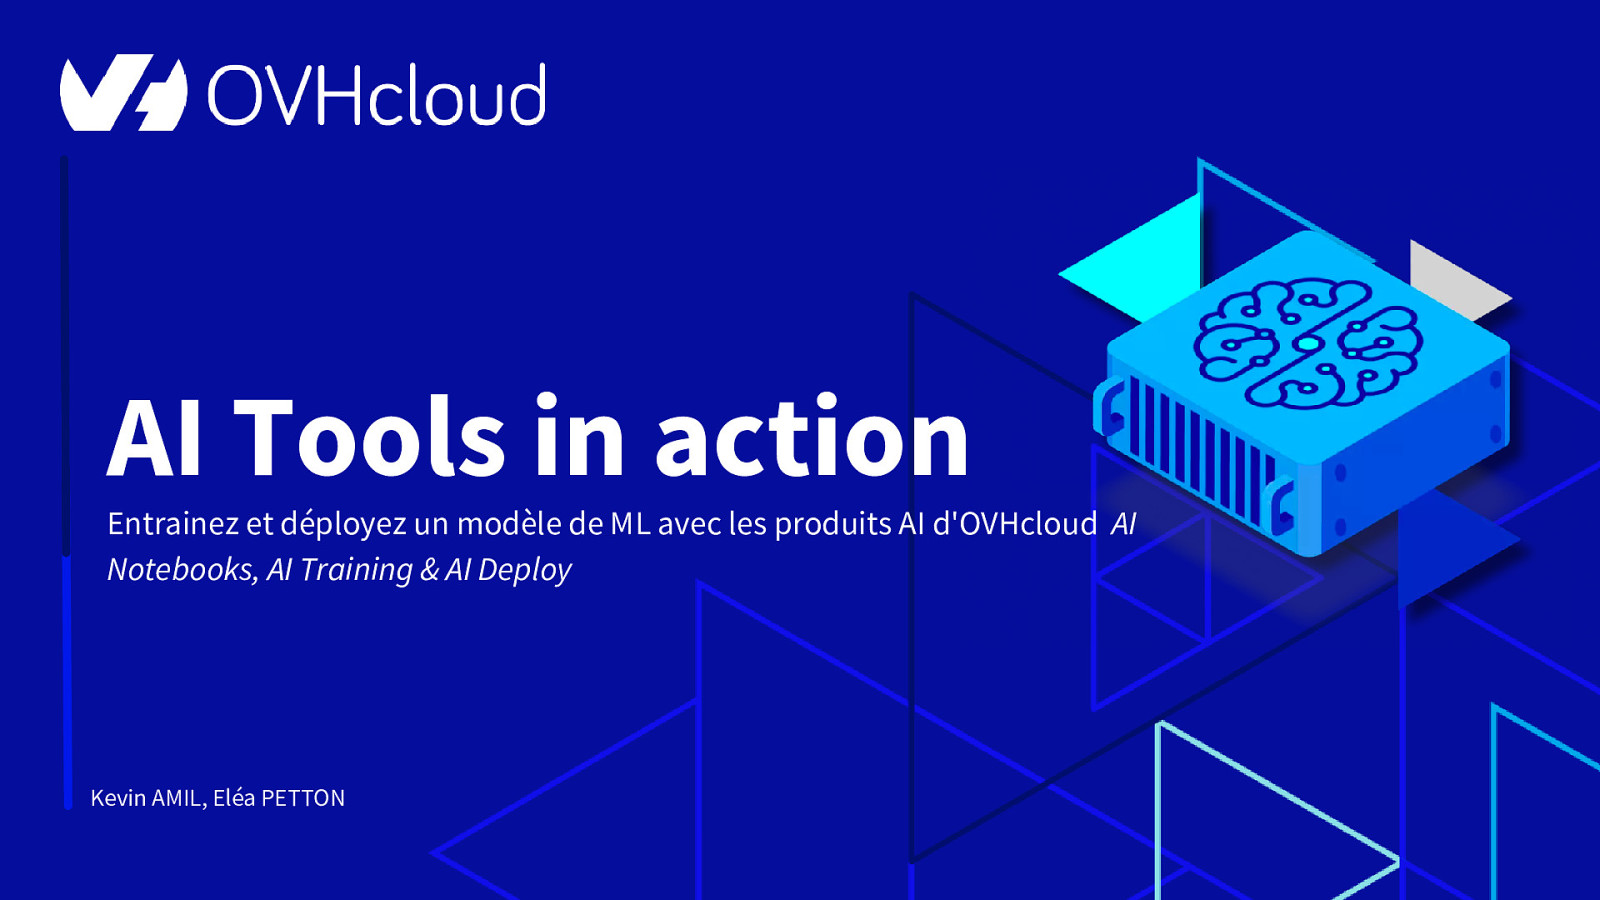 AI Tools in action - Entrainez et déployez un modèle de ML avec les produits AI d’OVHcloud (AI Notebooks, AI Training & AI Deploy)